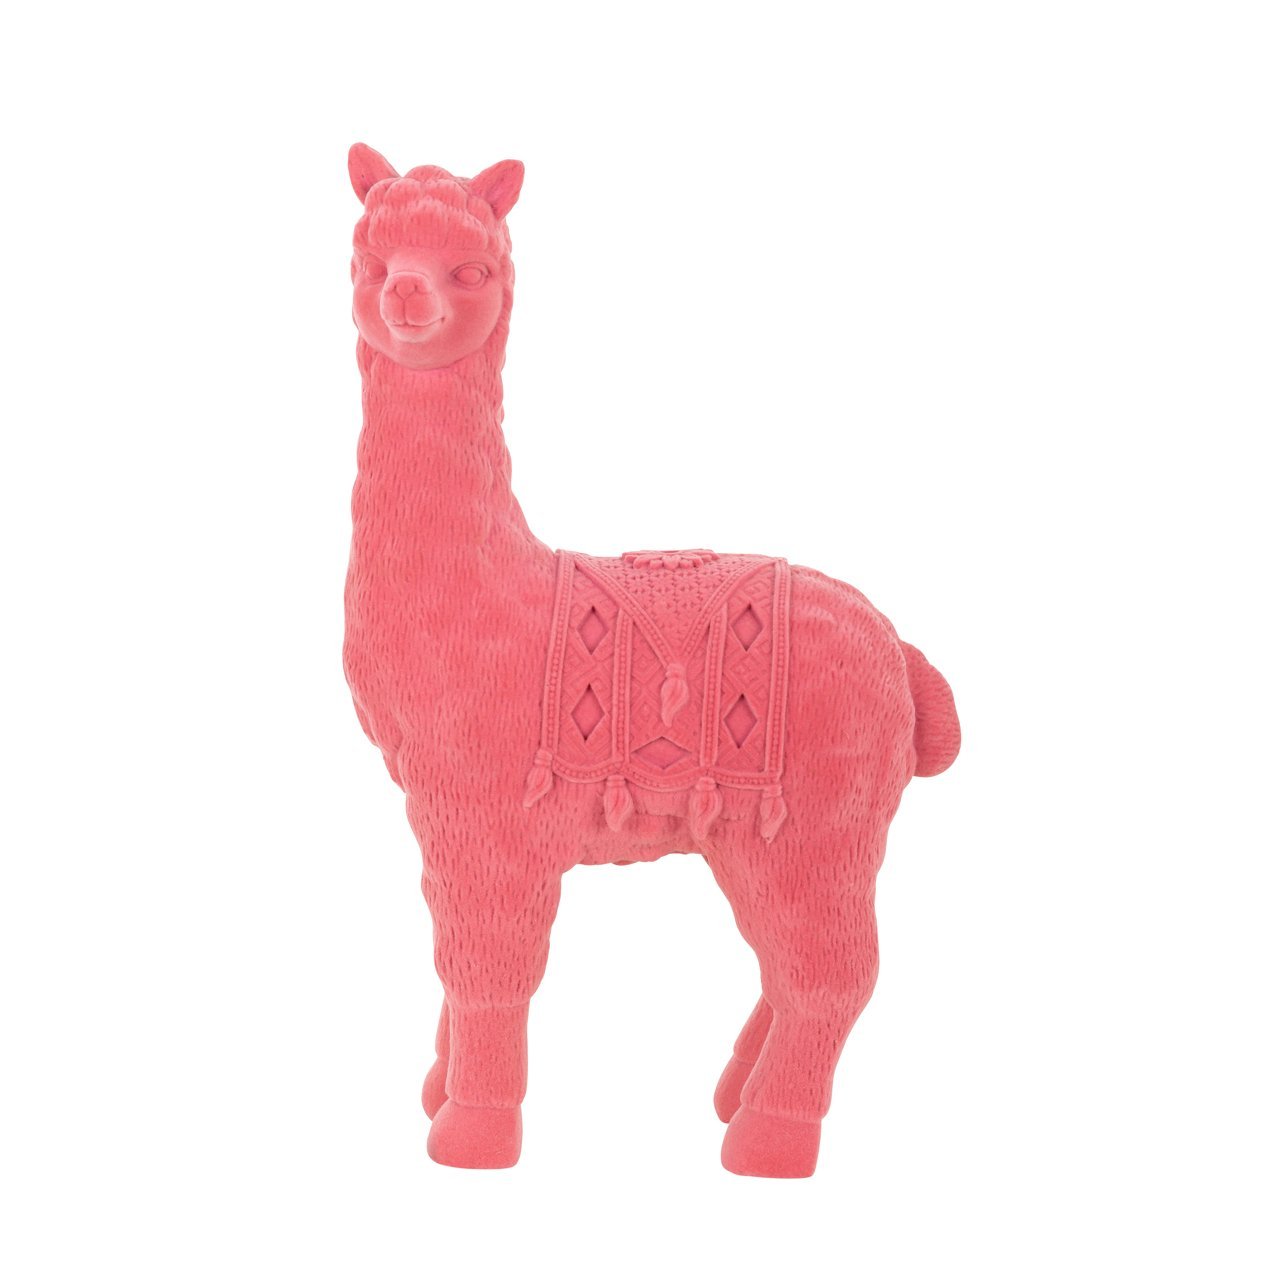 zijaanzicht van het Richmond interiors roze alpaca beeldje als deco object